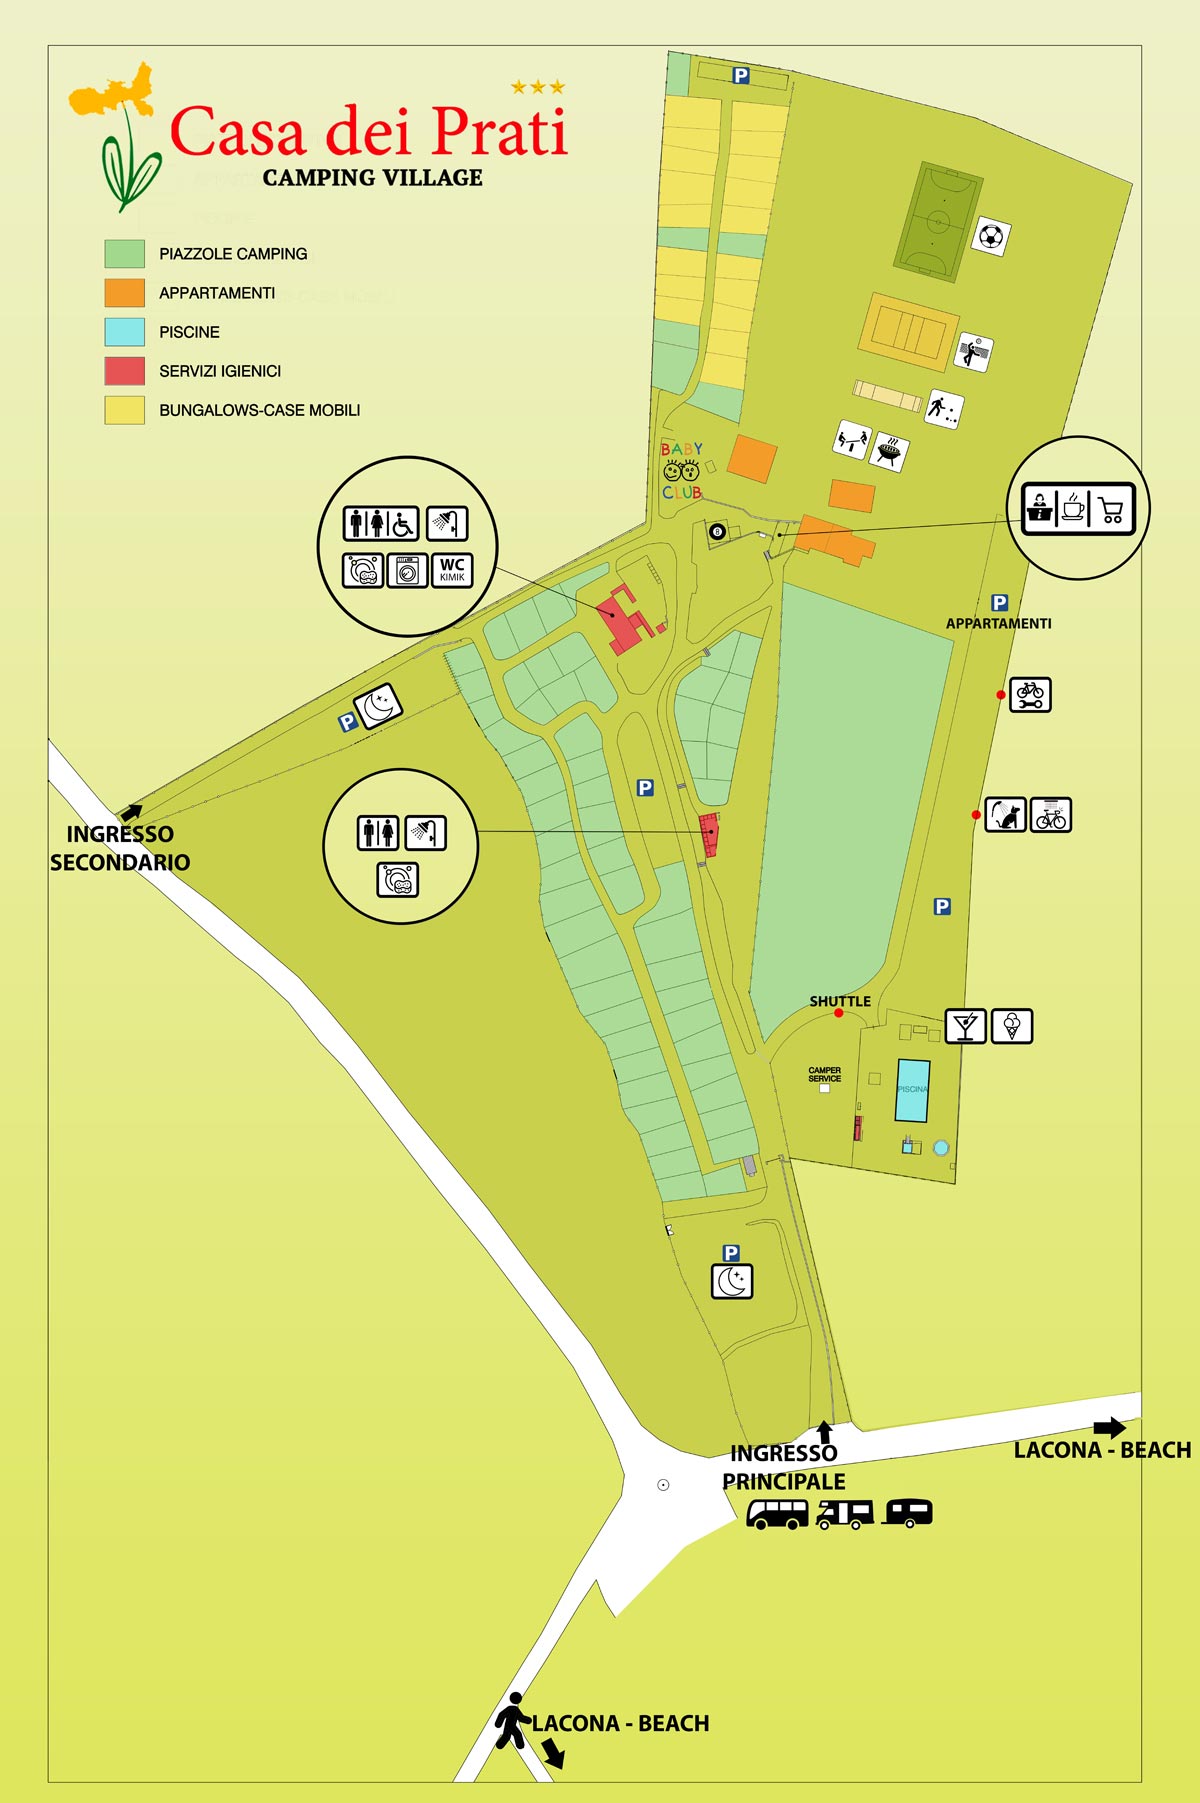 Map of Camping Casa dei Prati Village in Lacona